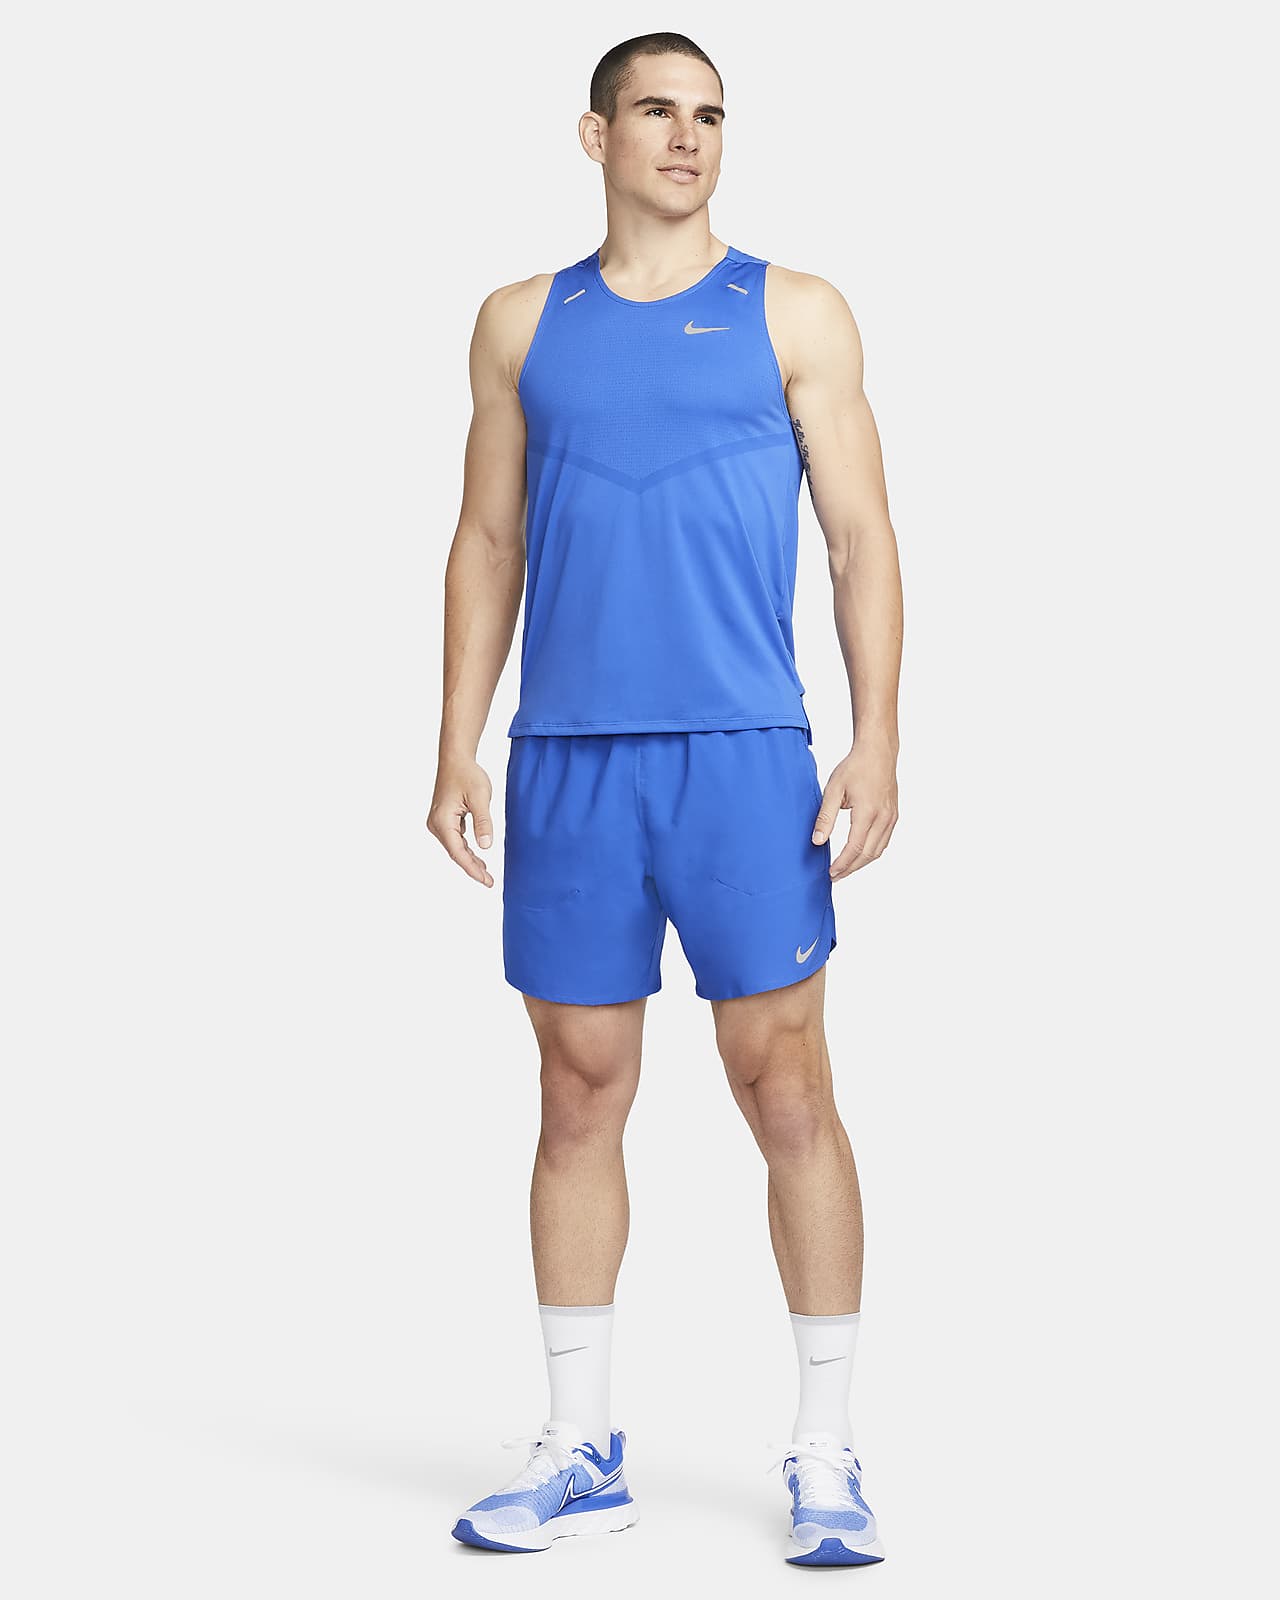 Nike drifit coral orange running athletic workout shorts size medium